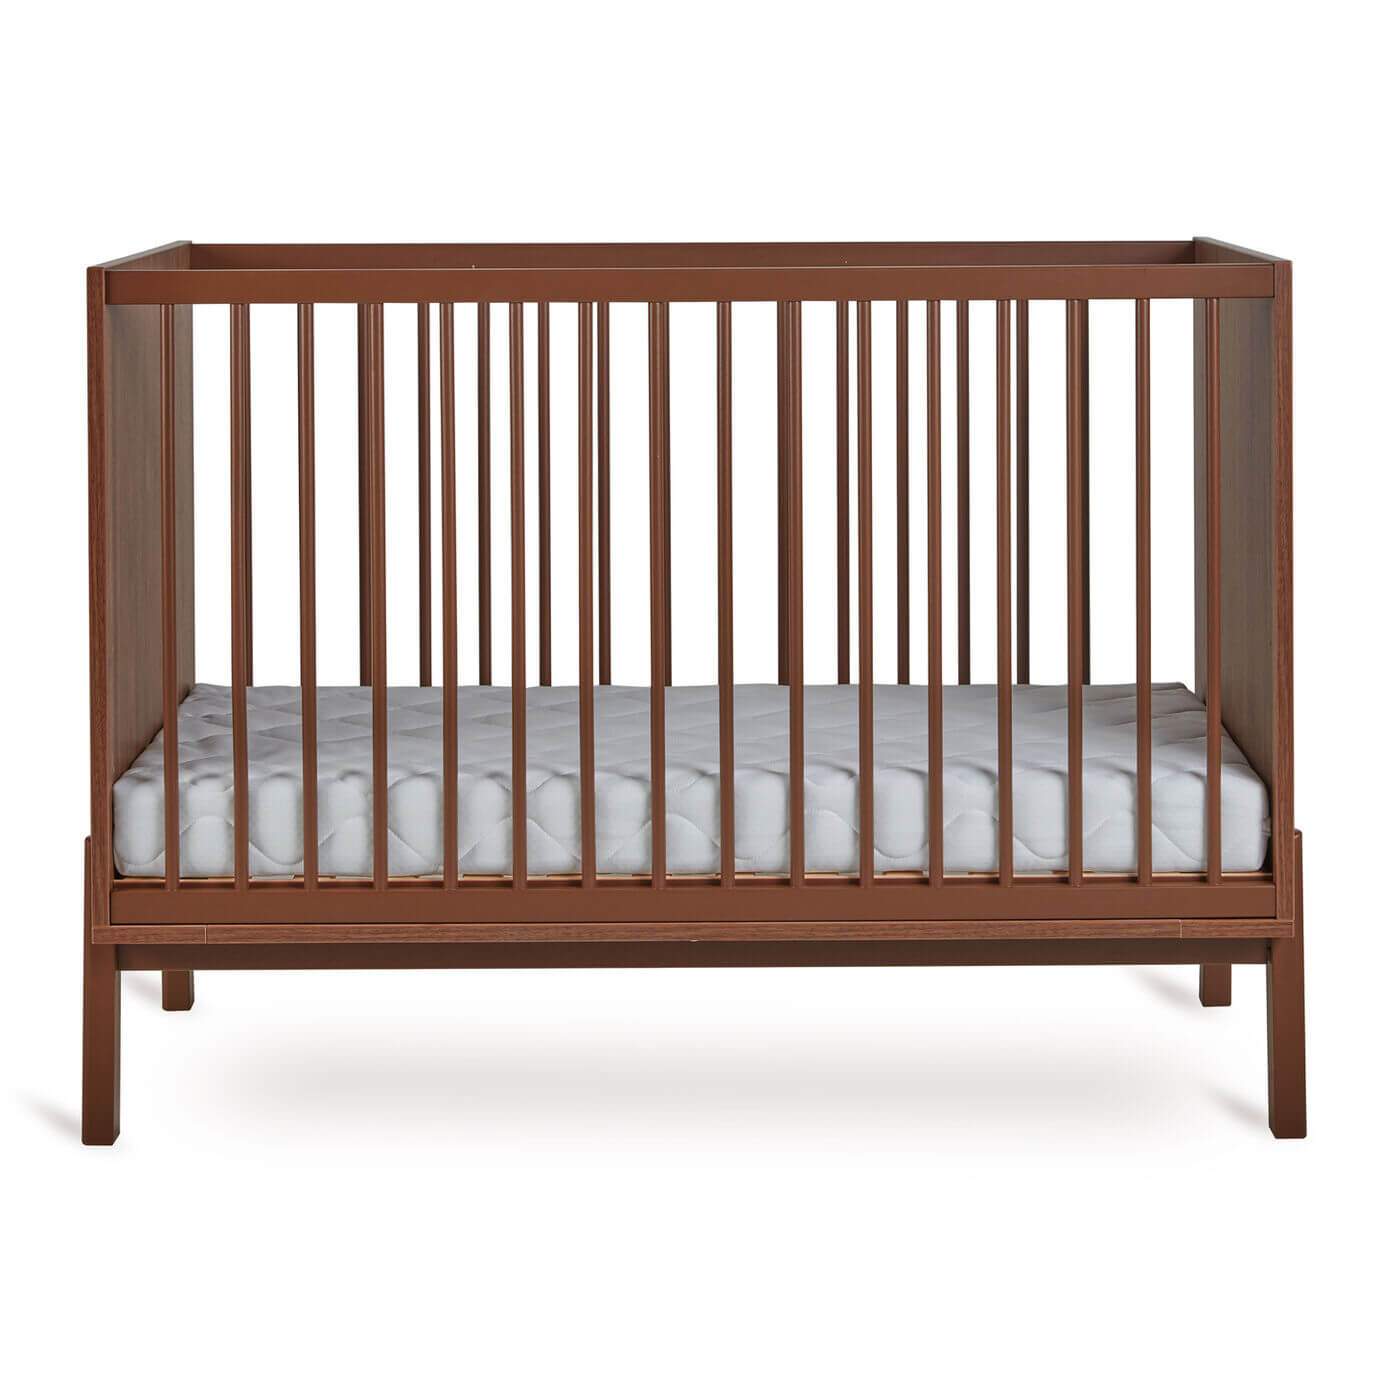 Lit à barreaux ASHI Châtaignier 120x60cm Quax - Cribs & Toddler Beds par Quax